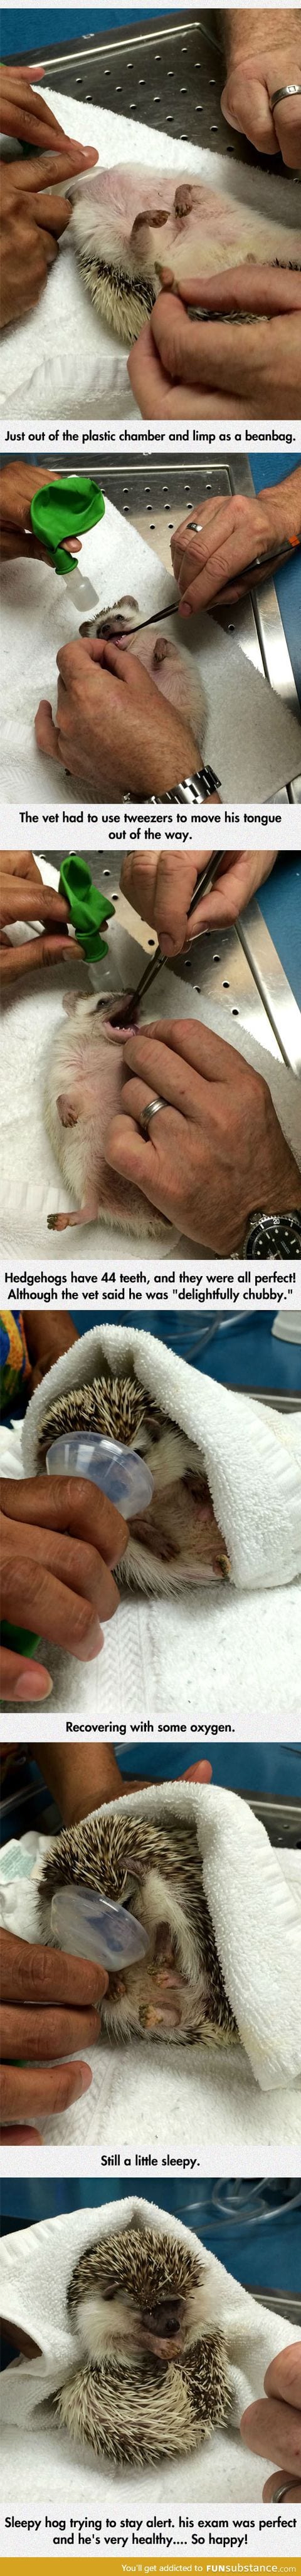 Hedgehog’s dental exam